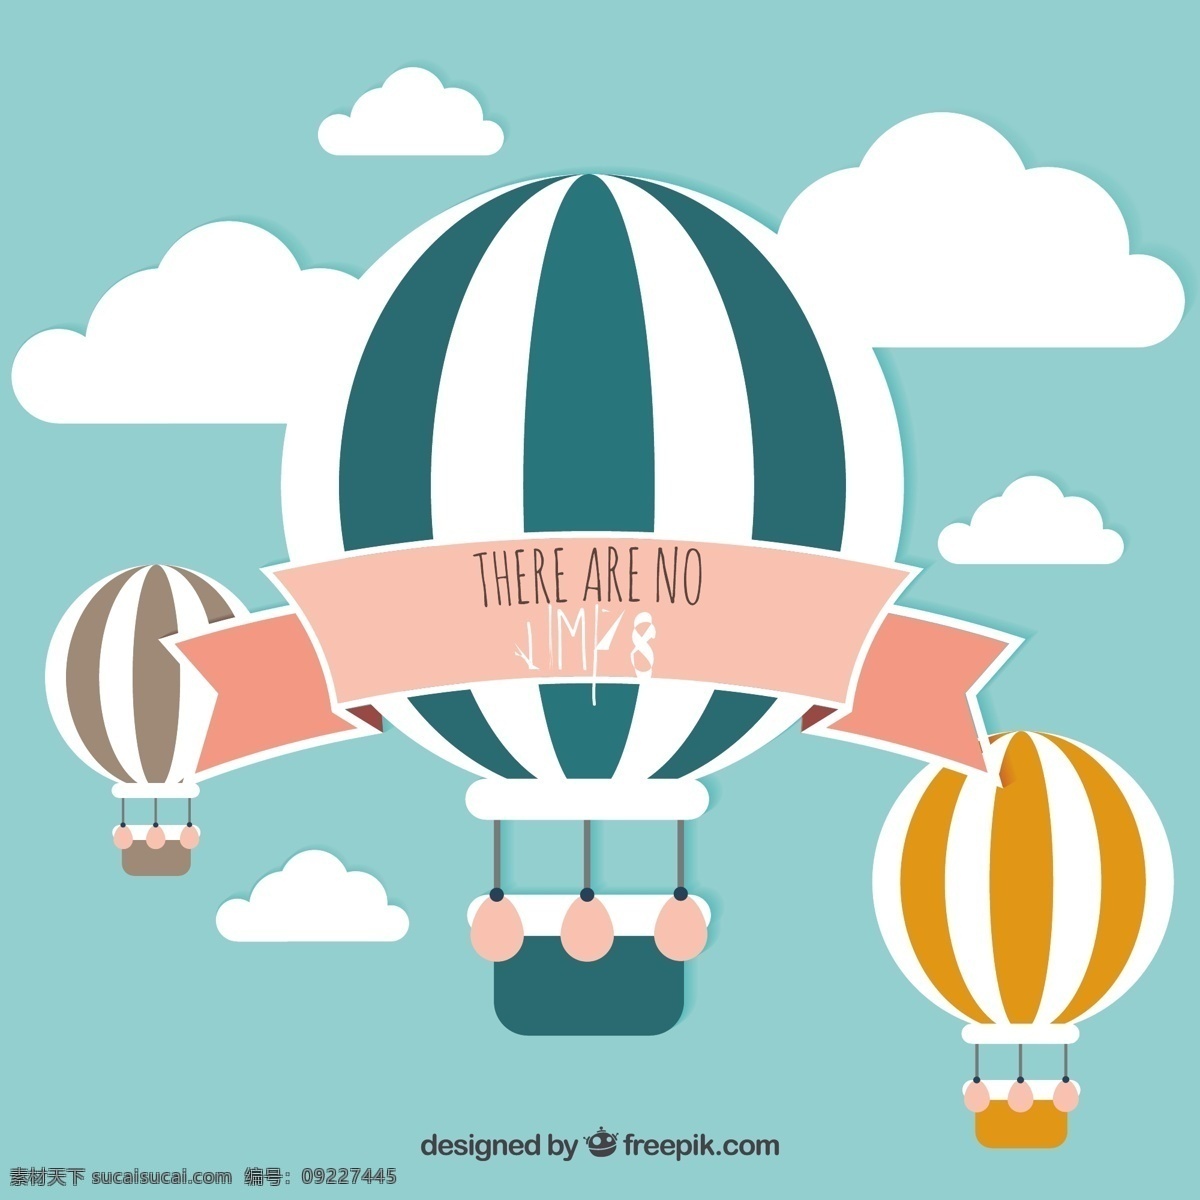 没有限制 背景 天空 卡通 气球 可爱 成功 热气球 飞行 自由 空气 动力 空气囊 动机 极限 白色